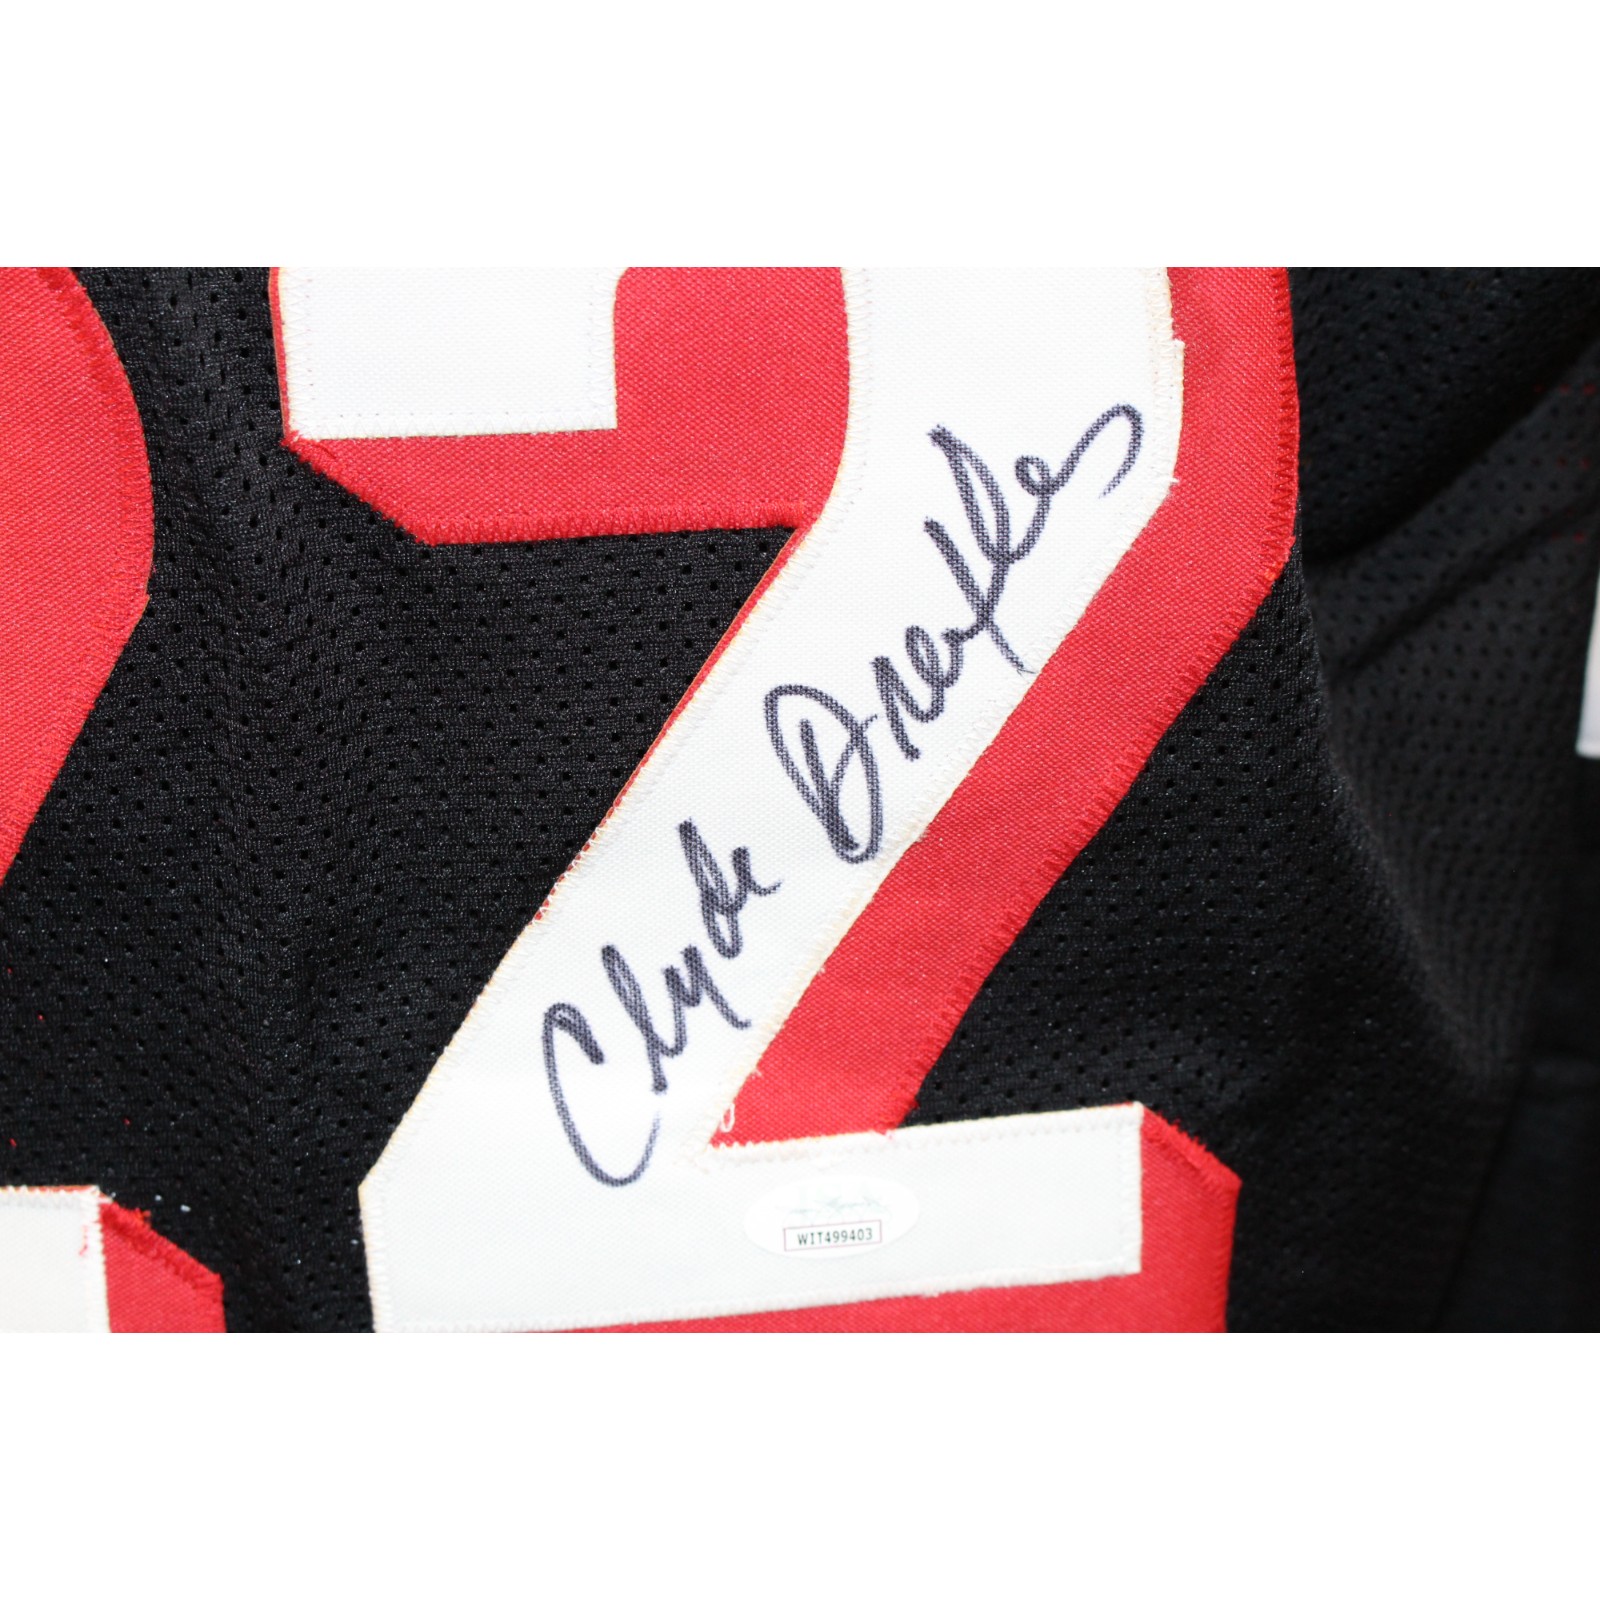 Clyde Drexler Autographed/Signed Pro Style Black Jersey JSA